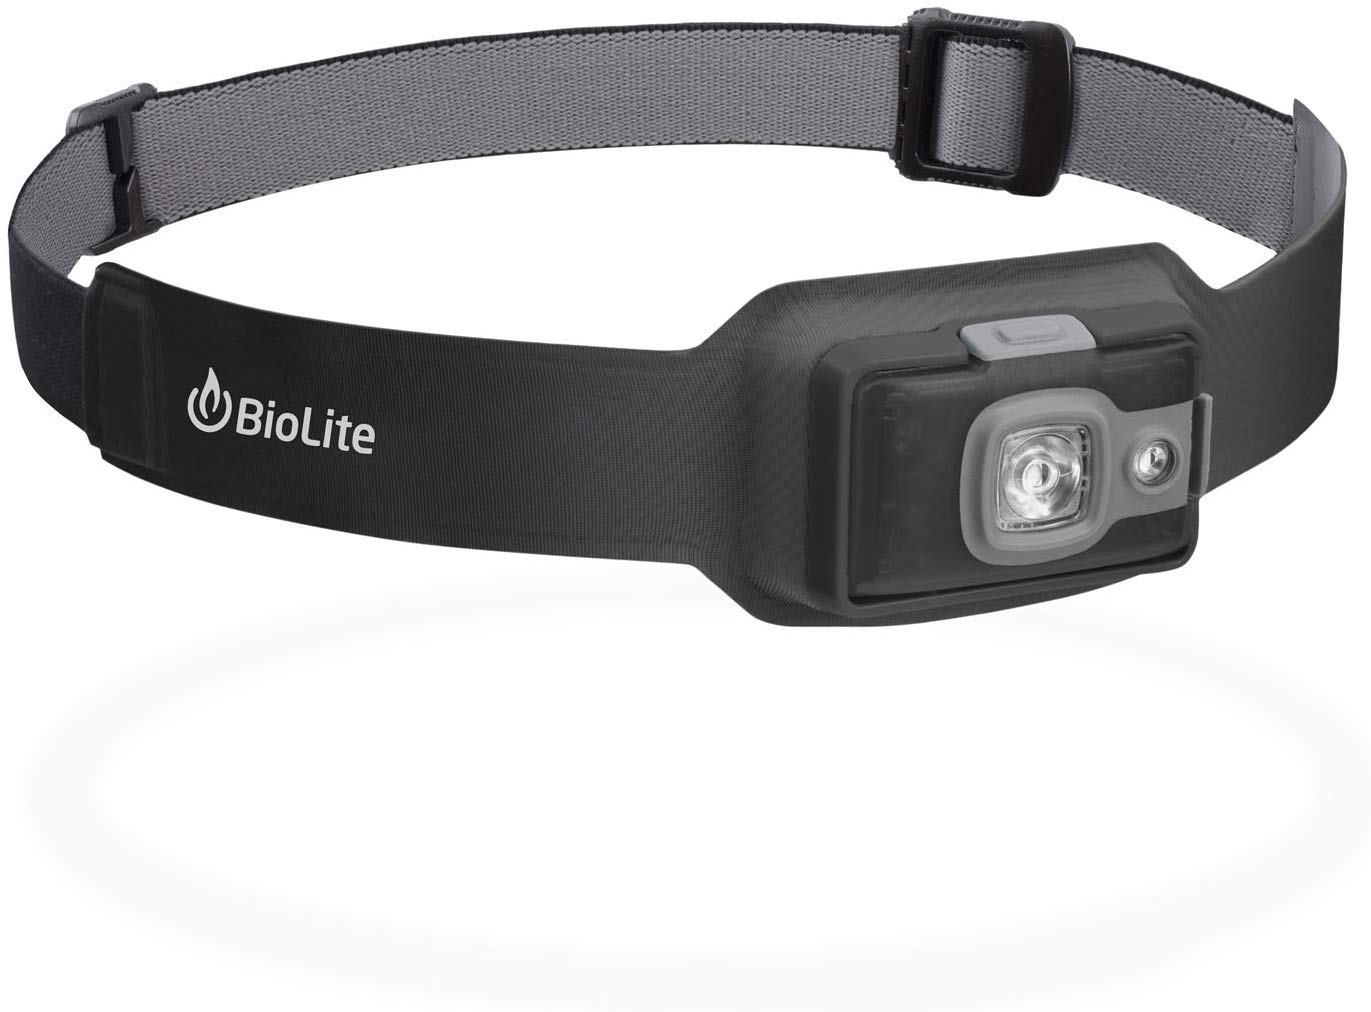 BioLite Headlamp 200 Review